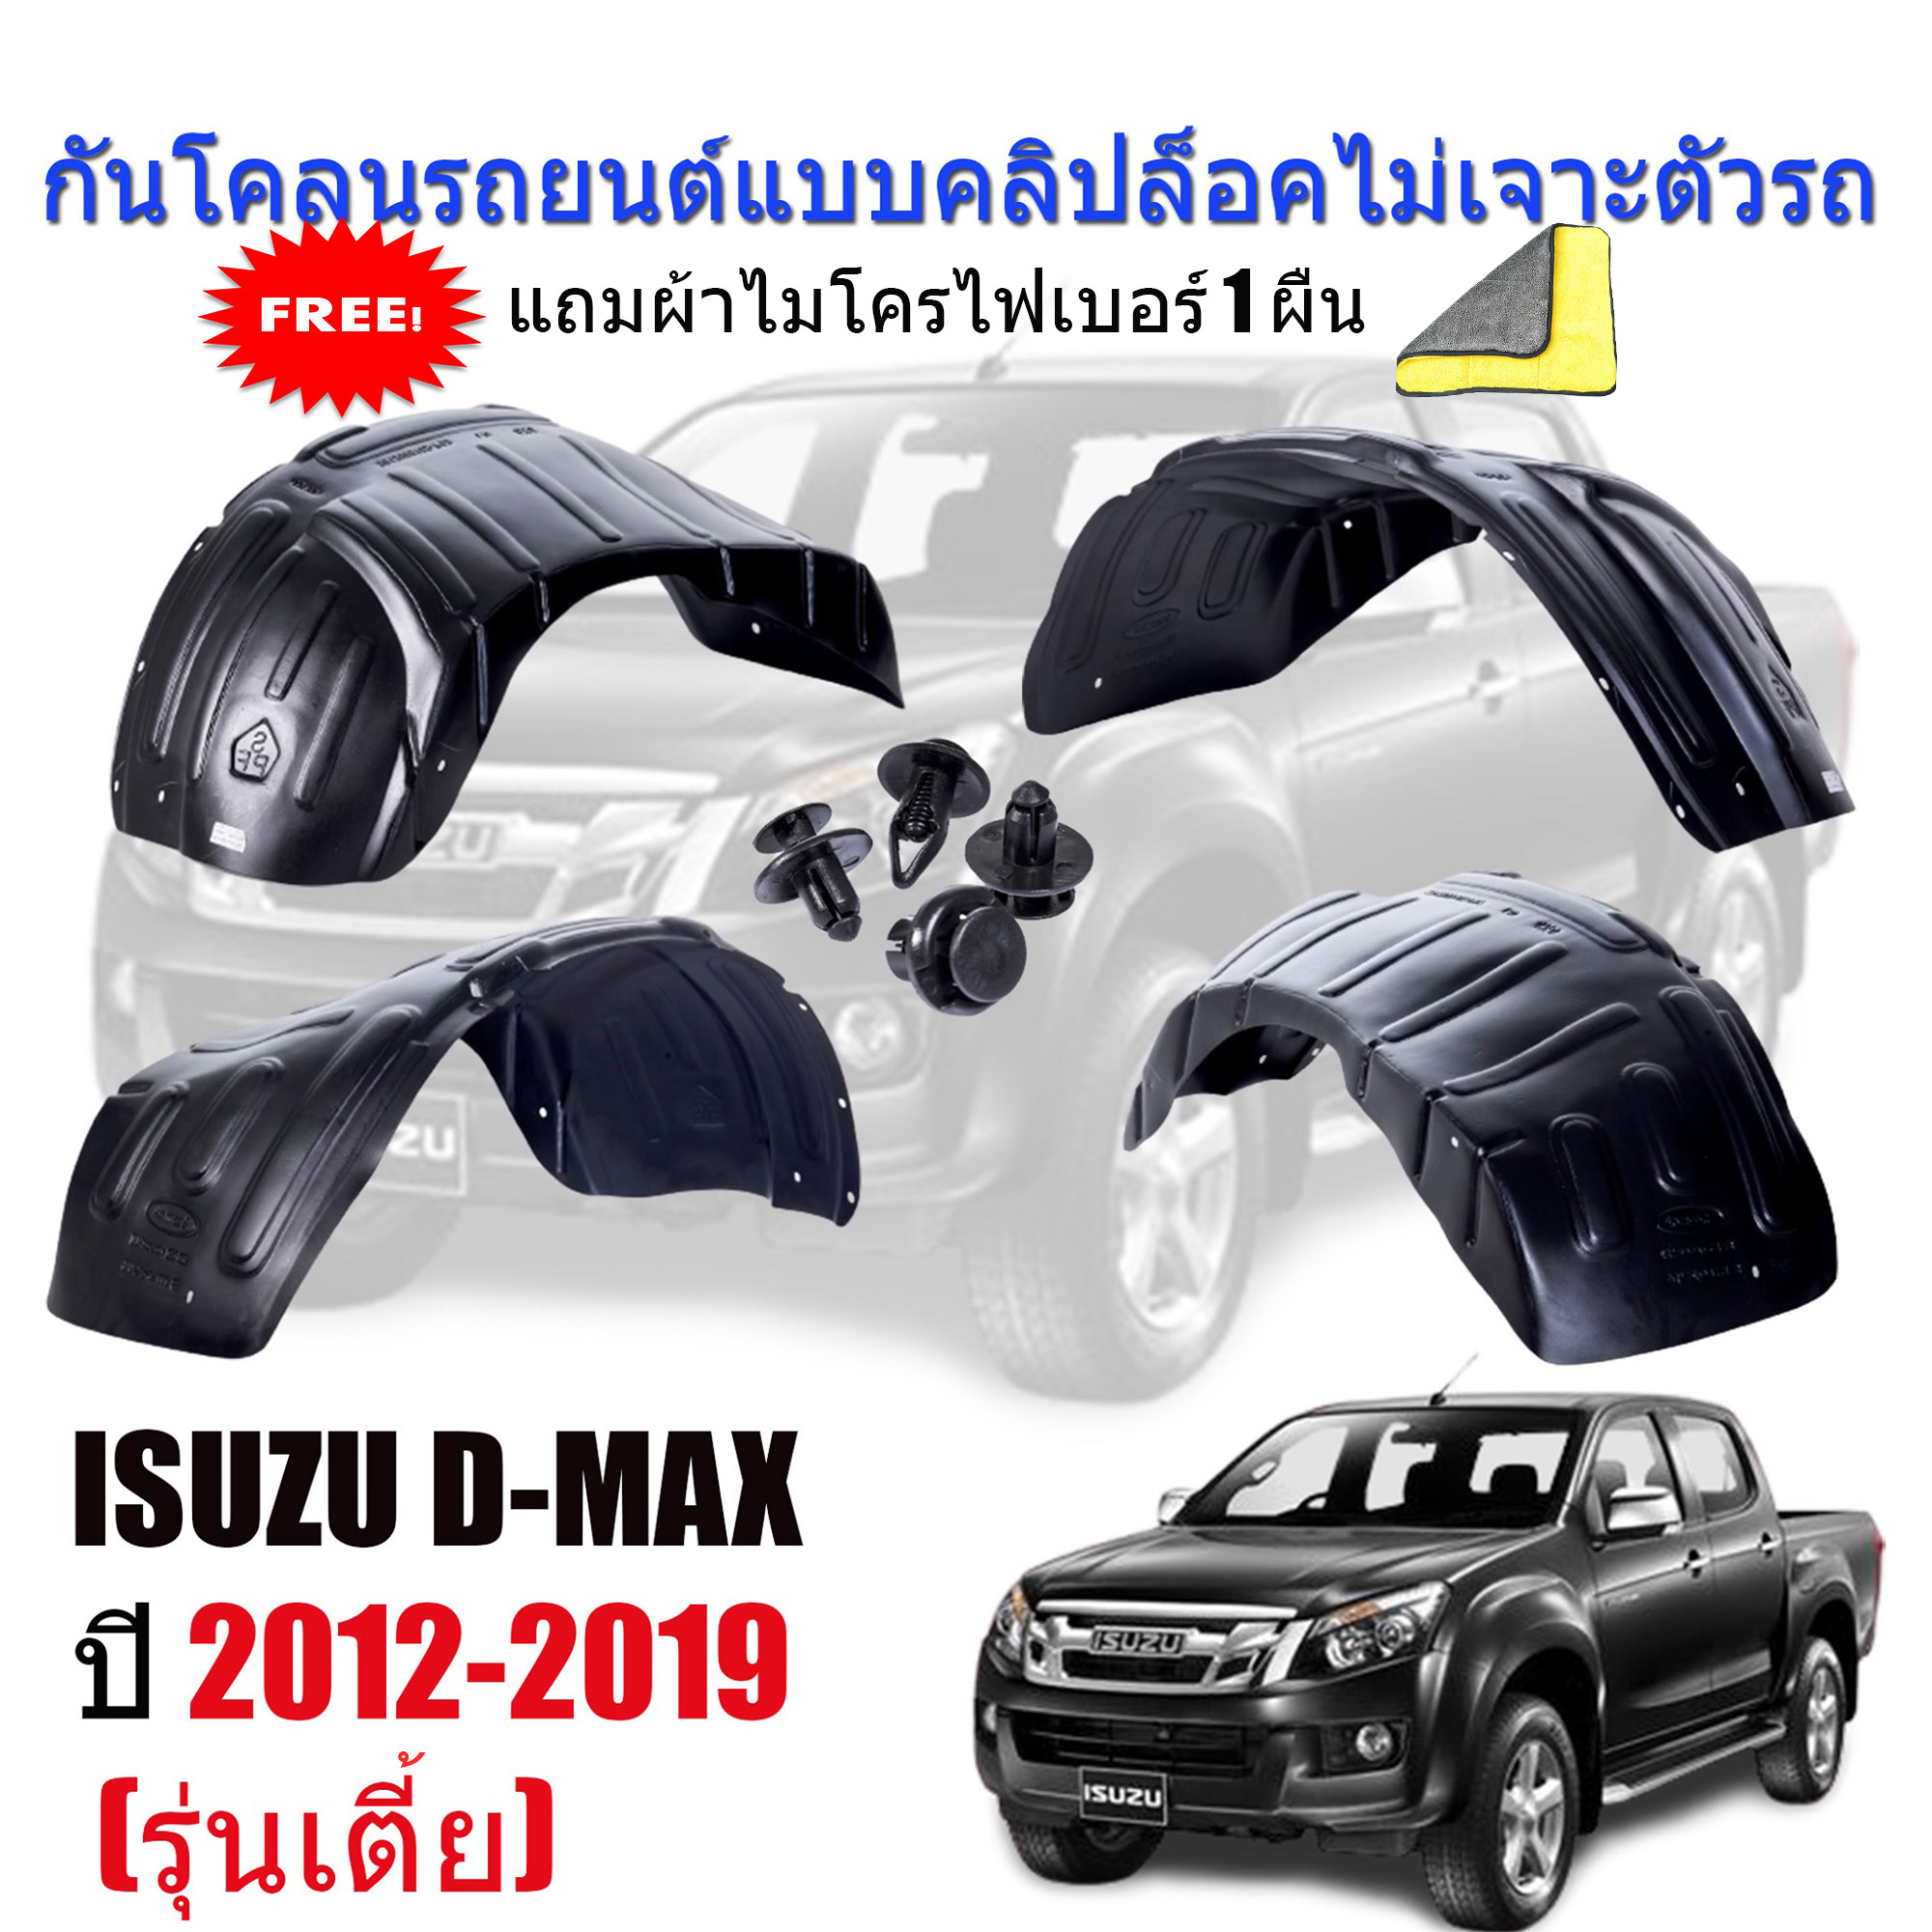 กันโคลนรถยนต์ ISUZU D-MAX (รุ่นเตี้ย) (4*2) ปี 2012-2019 (แบบคลิ๊ปล็อคไม่เจาะตัวรถ) ซุ้มล้อ กันโคลนพลาสติก DMAX บังโคลน กันโคลน กรุล้อ ซุ้มล้อ รถยนต์